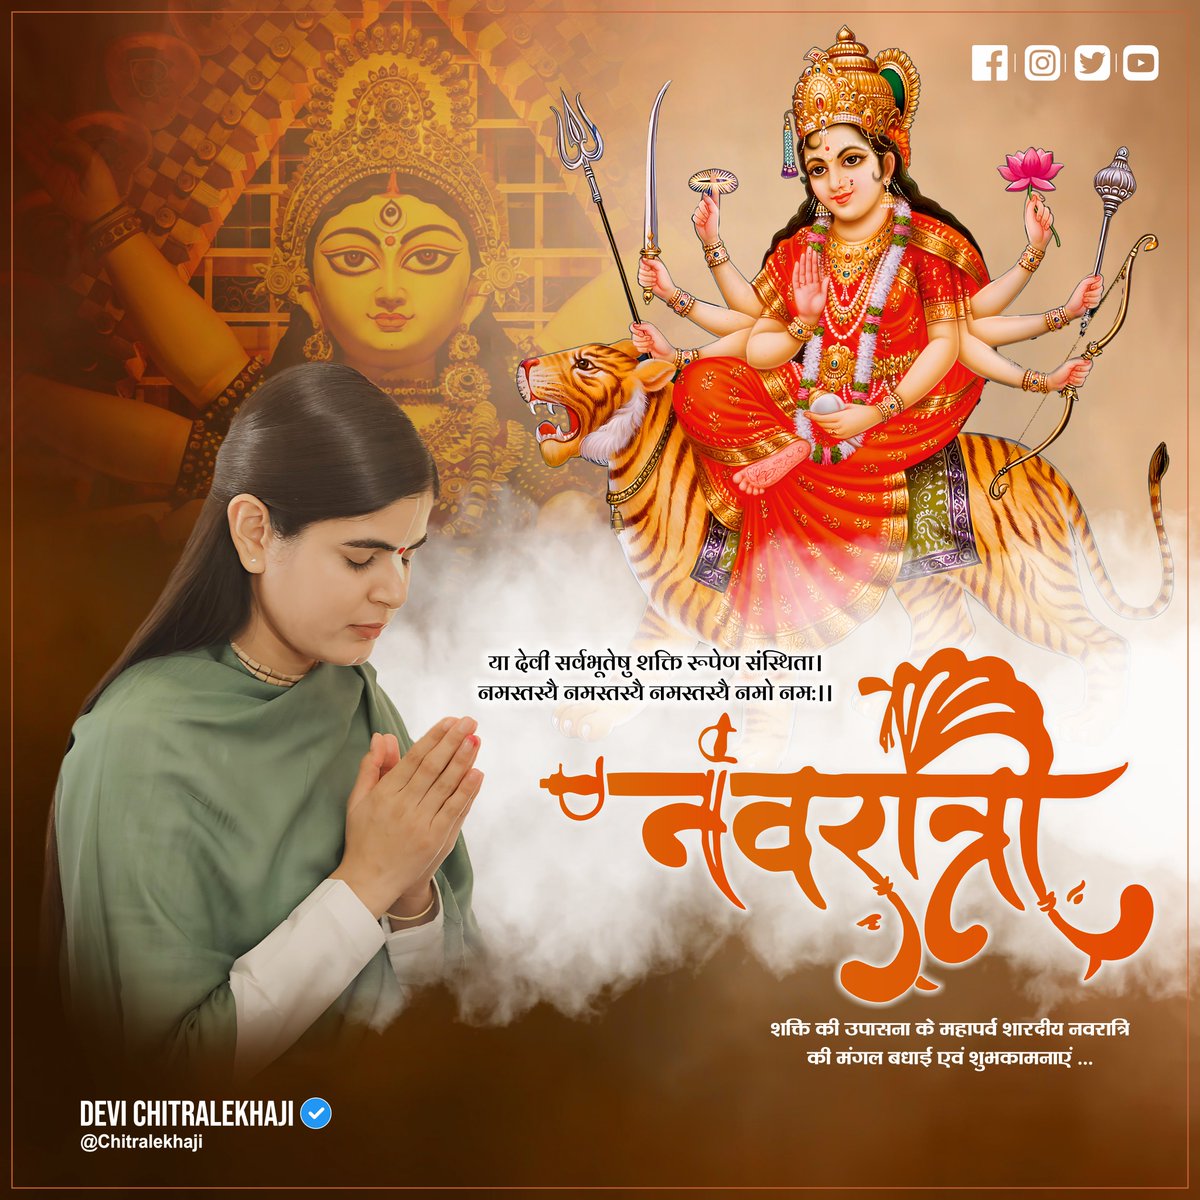 शक्ति की उपासना के महापर्व 'शारदीय नवरात्रि' की मंगल बधाई एवं शुभकामनाएं ...

#ShardiyaNavratri #DeviChitralekhaji